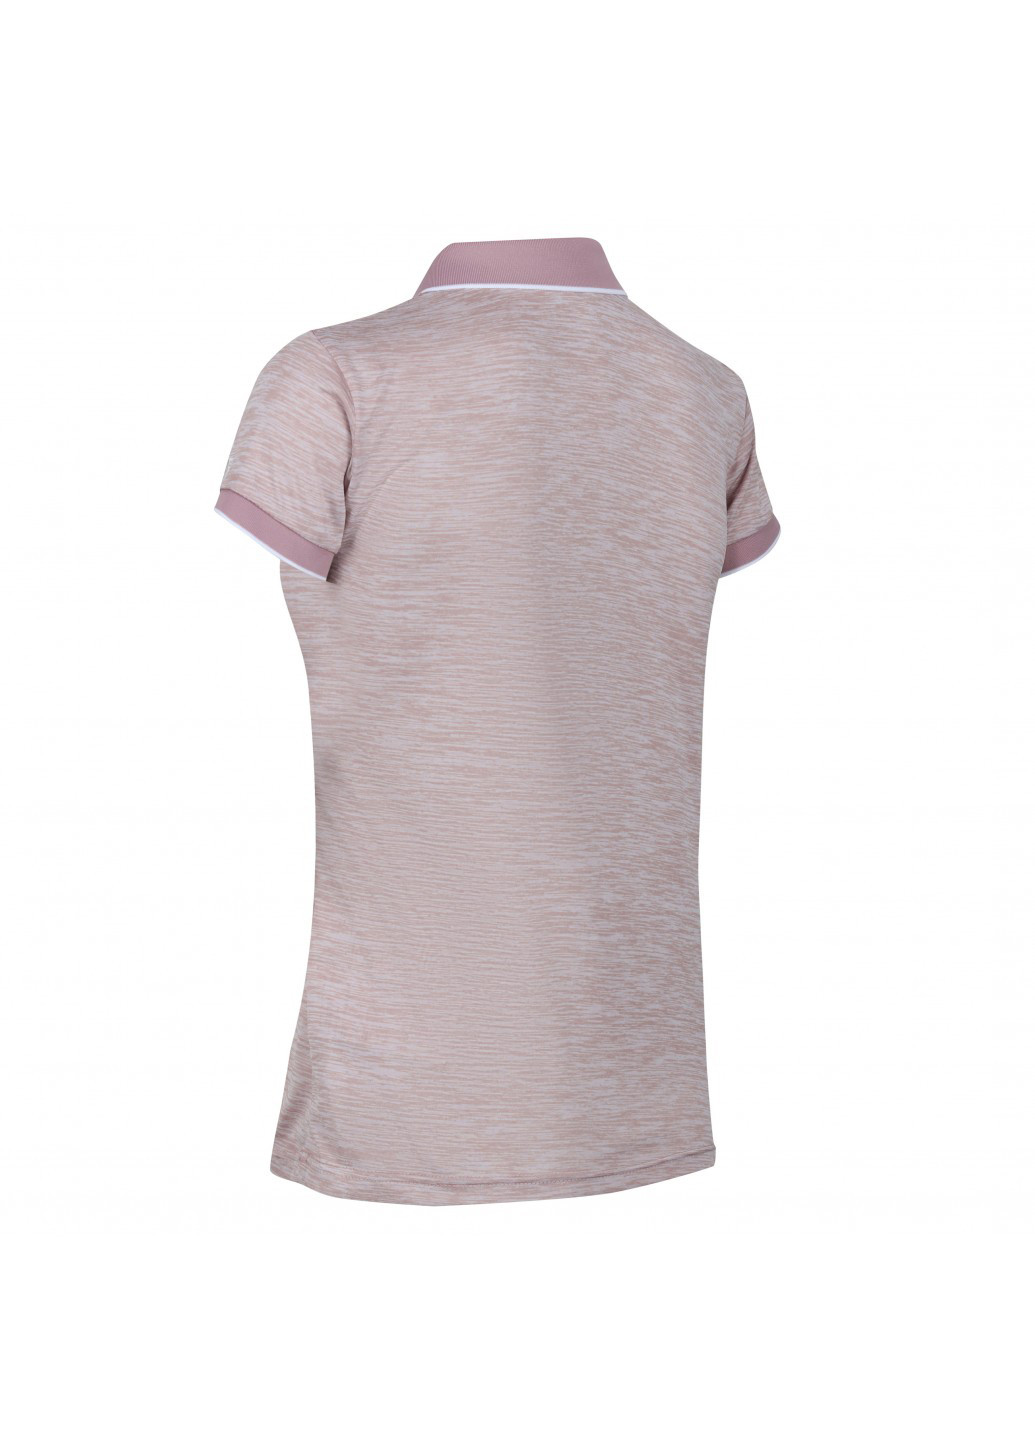 Розовая женская футболка-поло Regatta с надписью